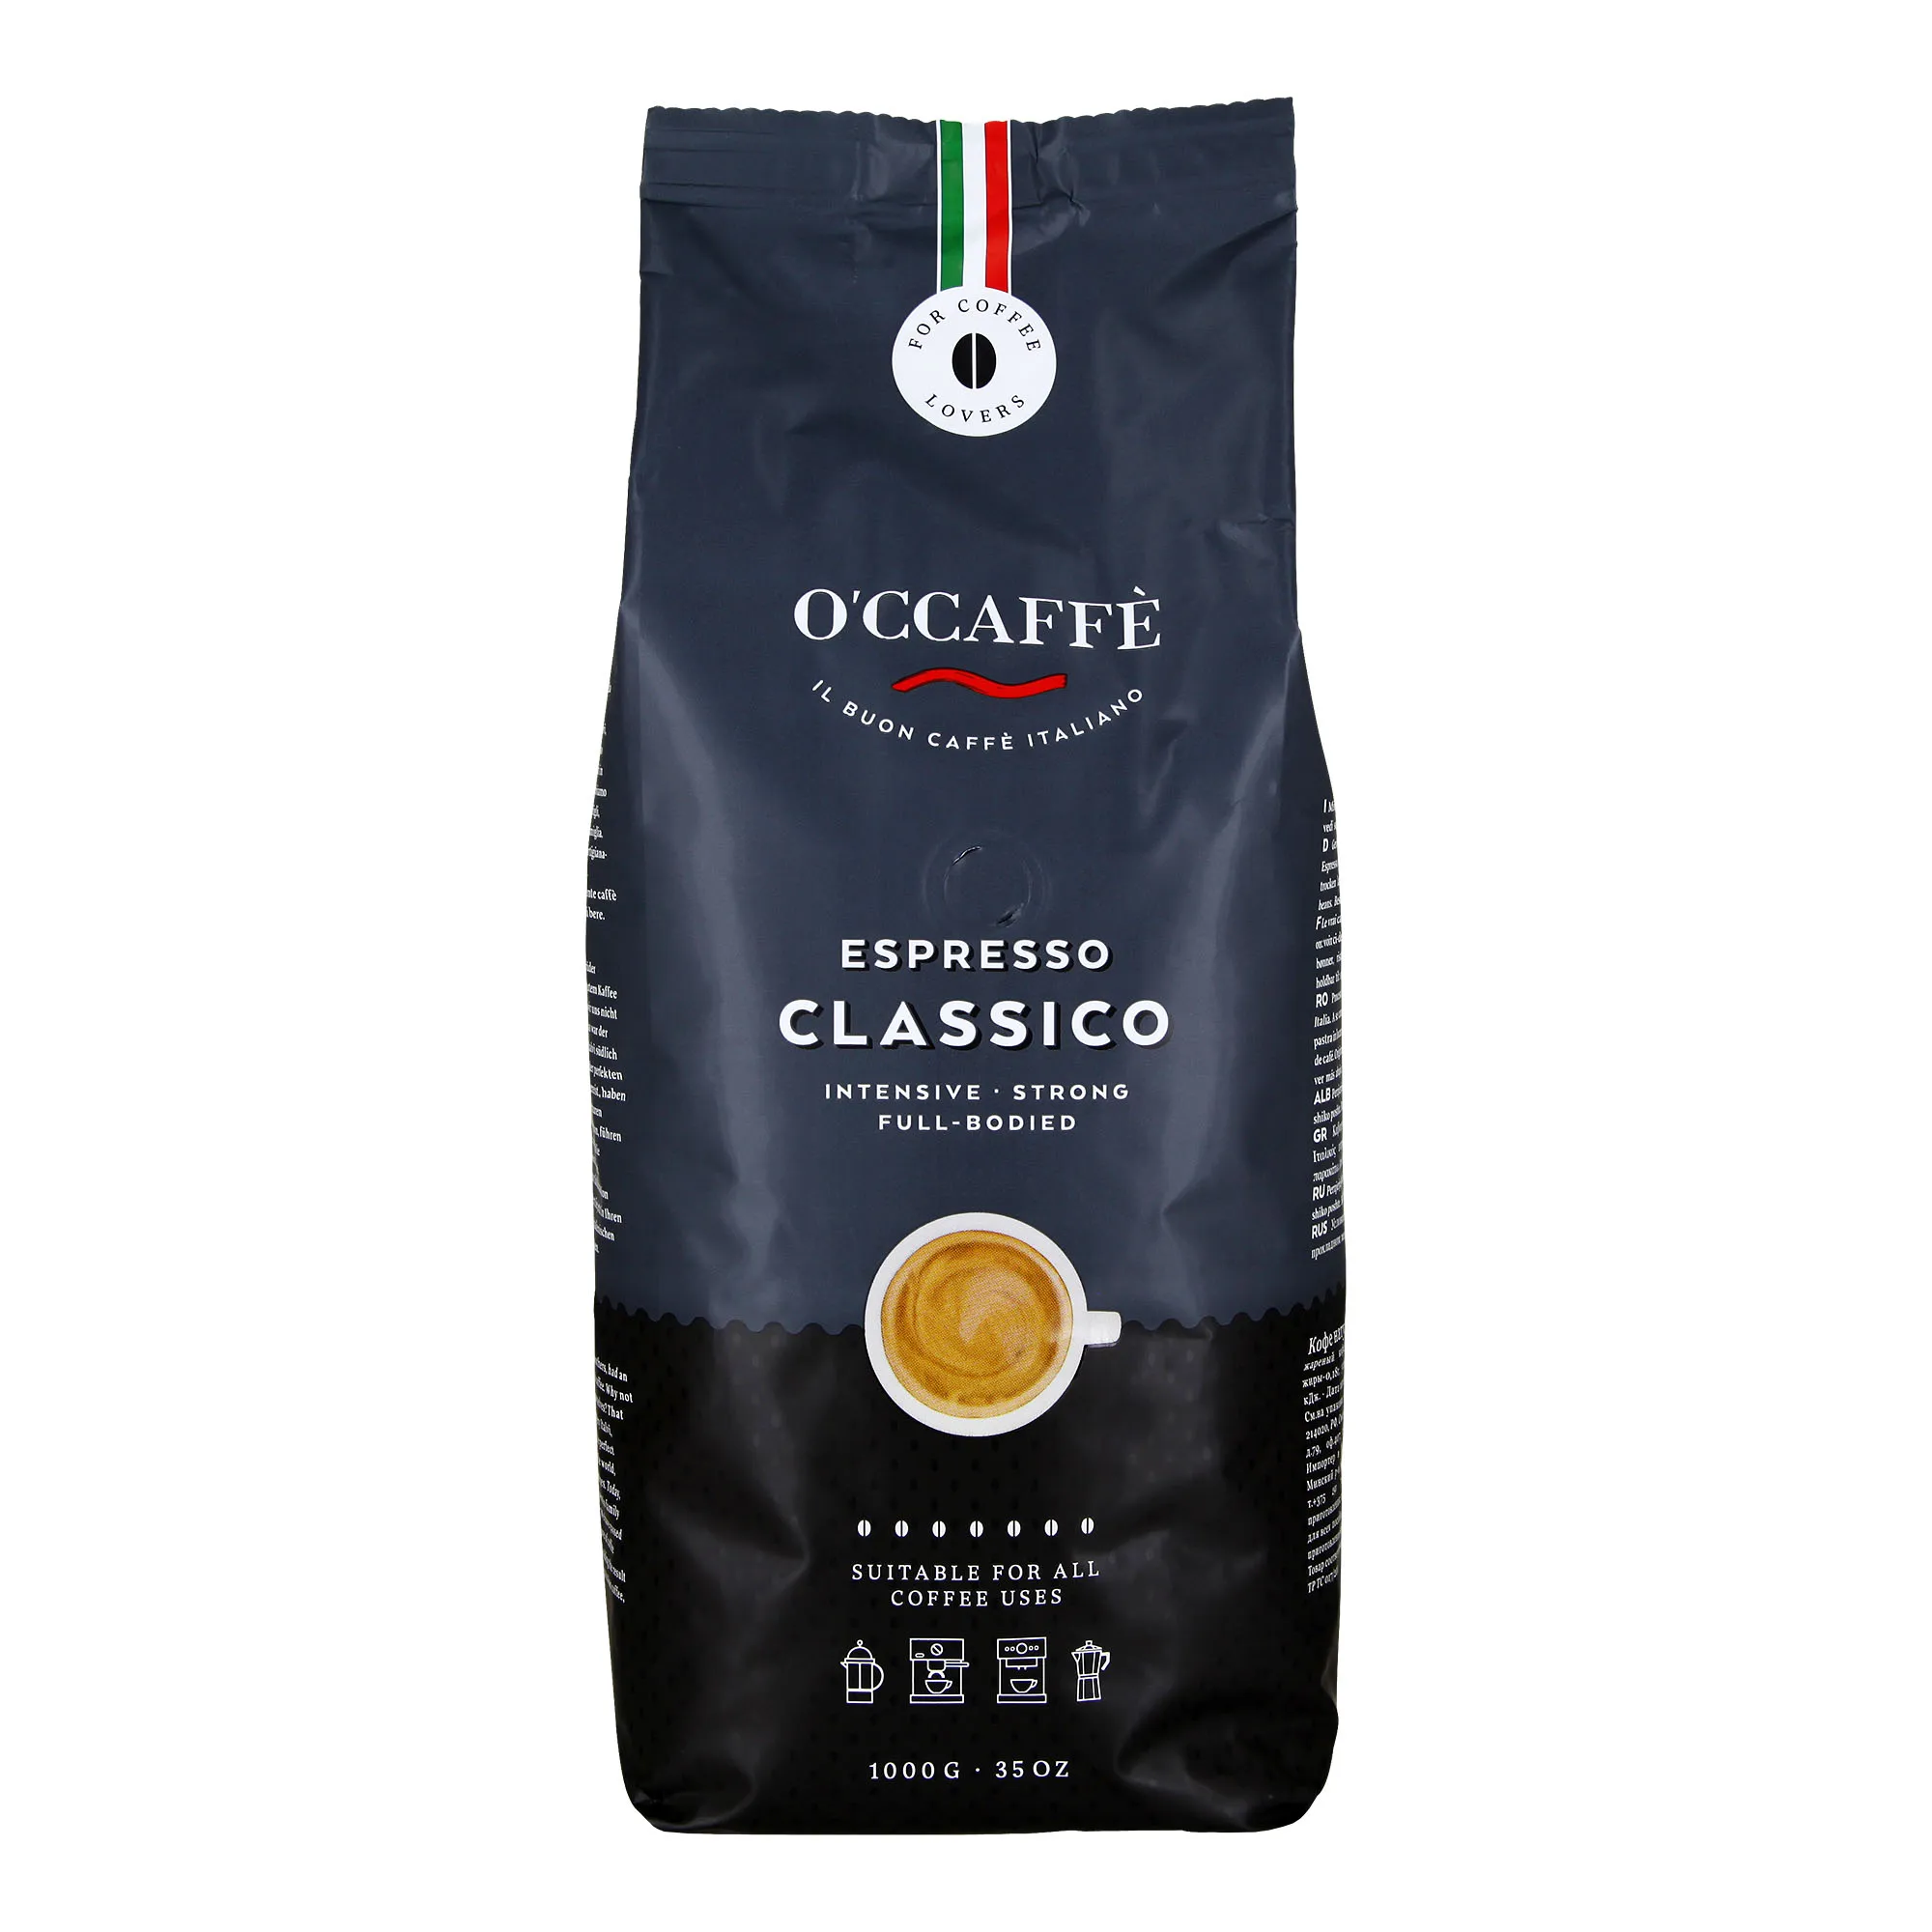 O'ccaffe Espresso Classico 1 kg Italian Espresso Beans